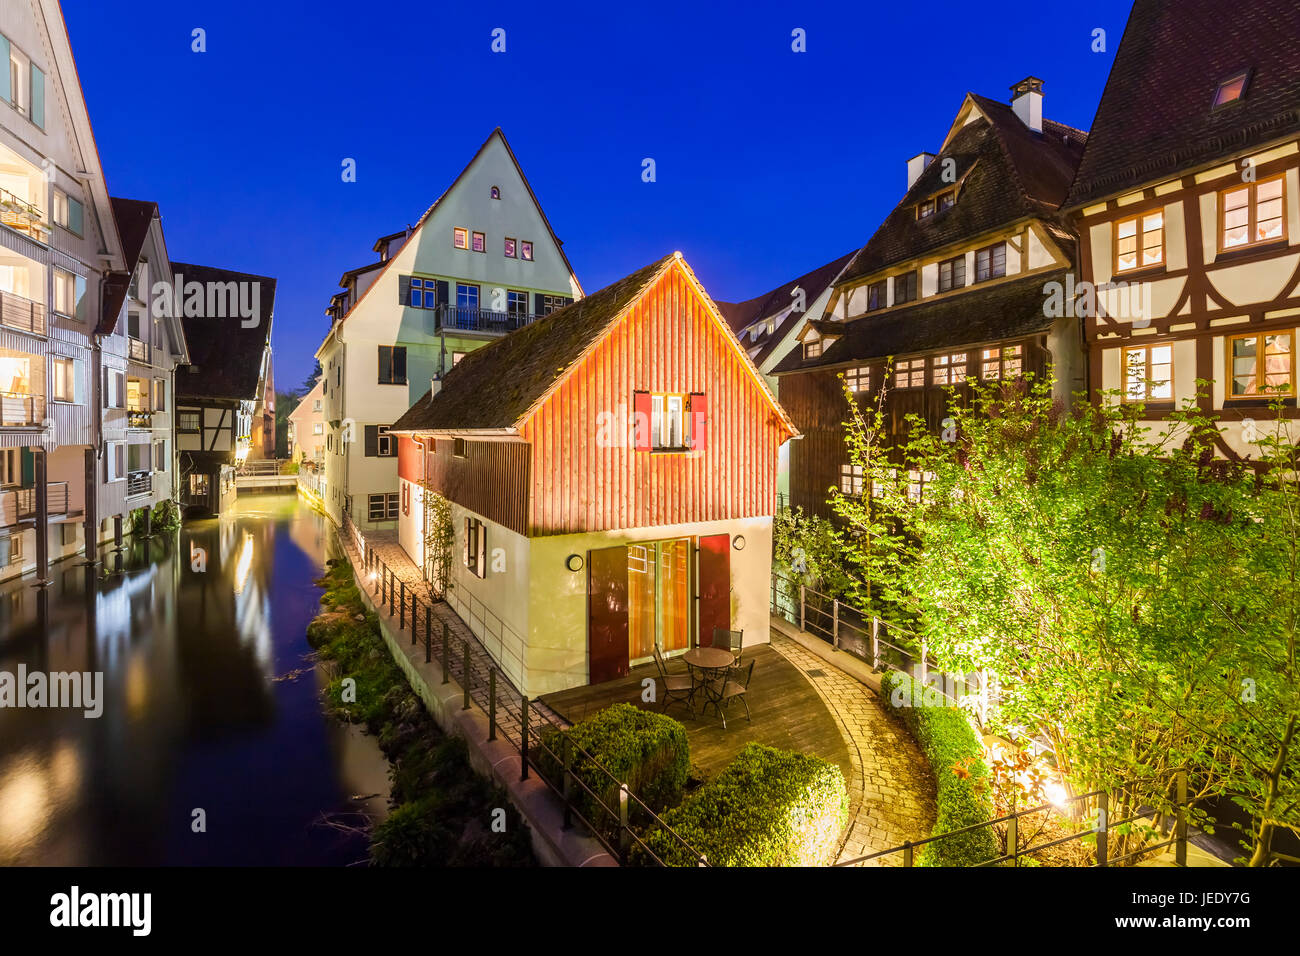 Deutschland, Baden-Württemberg, Ulm, Altstadt, Fischerviertel, Kanäle der Blau, historische Häuser, Fachwerkhäuser, Wohnhaus Stock Photo